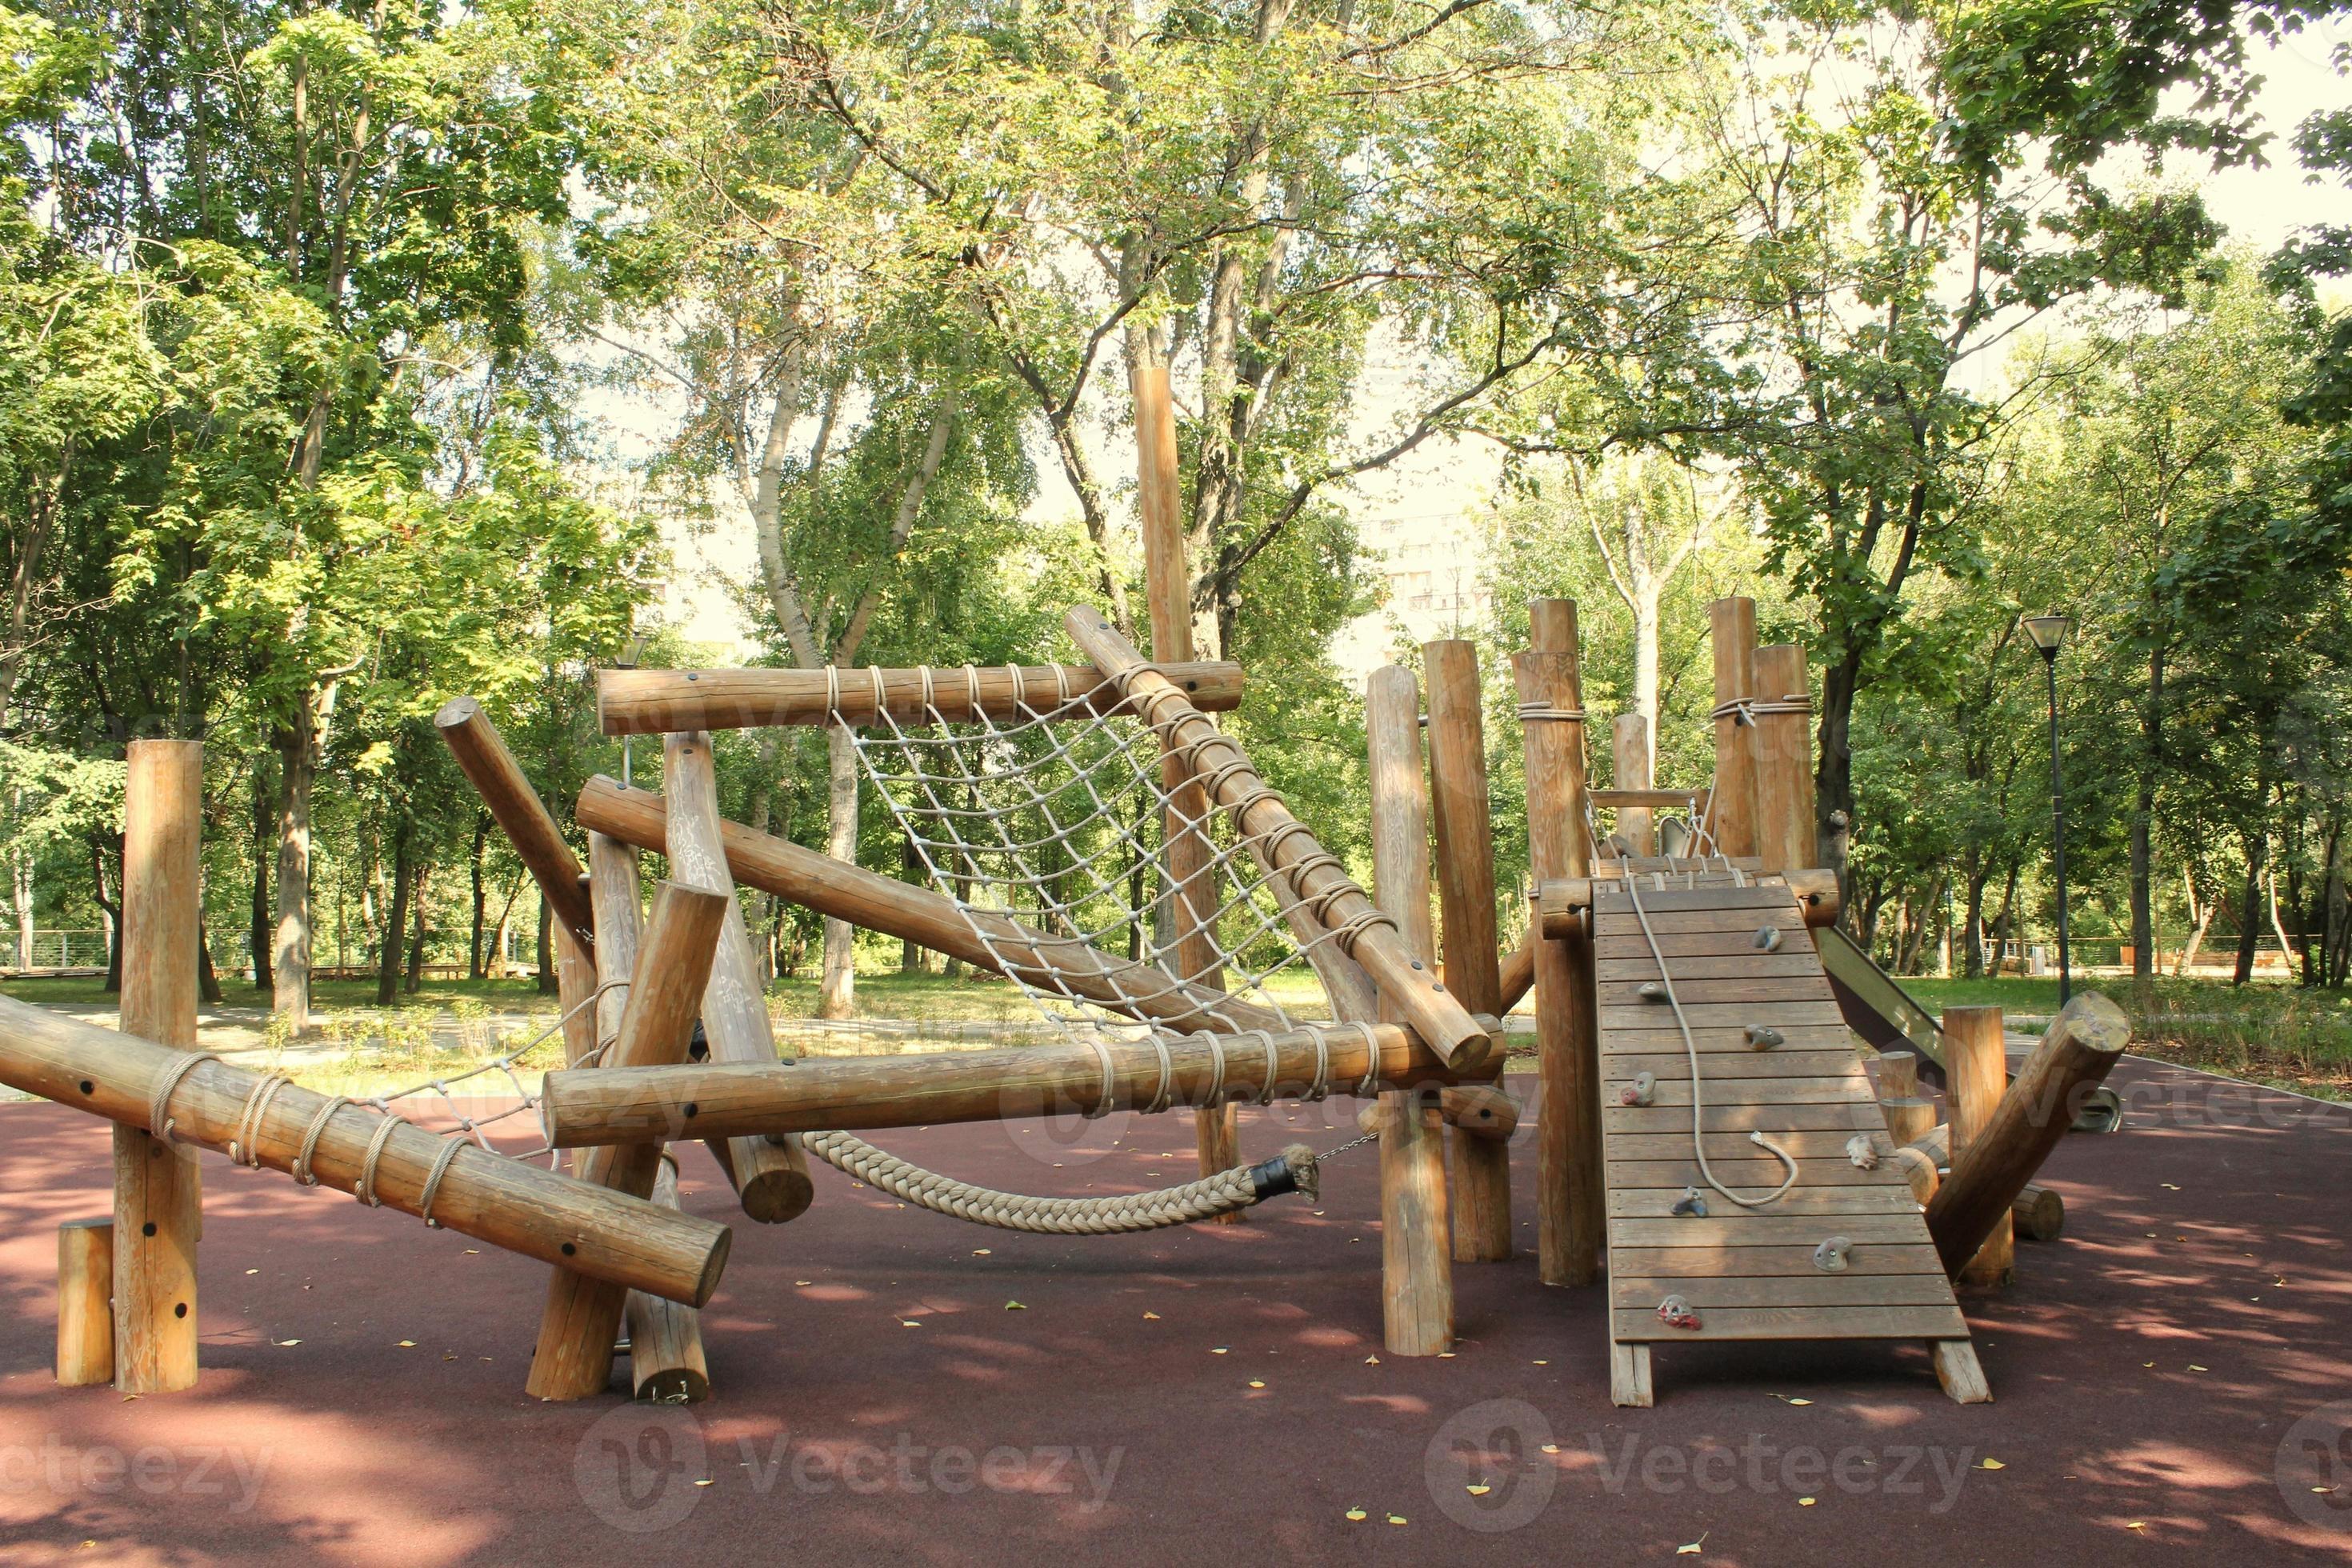 La location de jeux en bois: tellement plus écologique et ludique Astuces  Ecologie